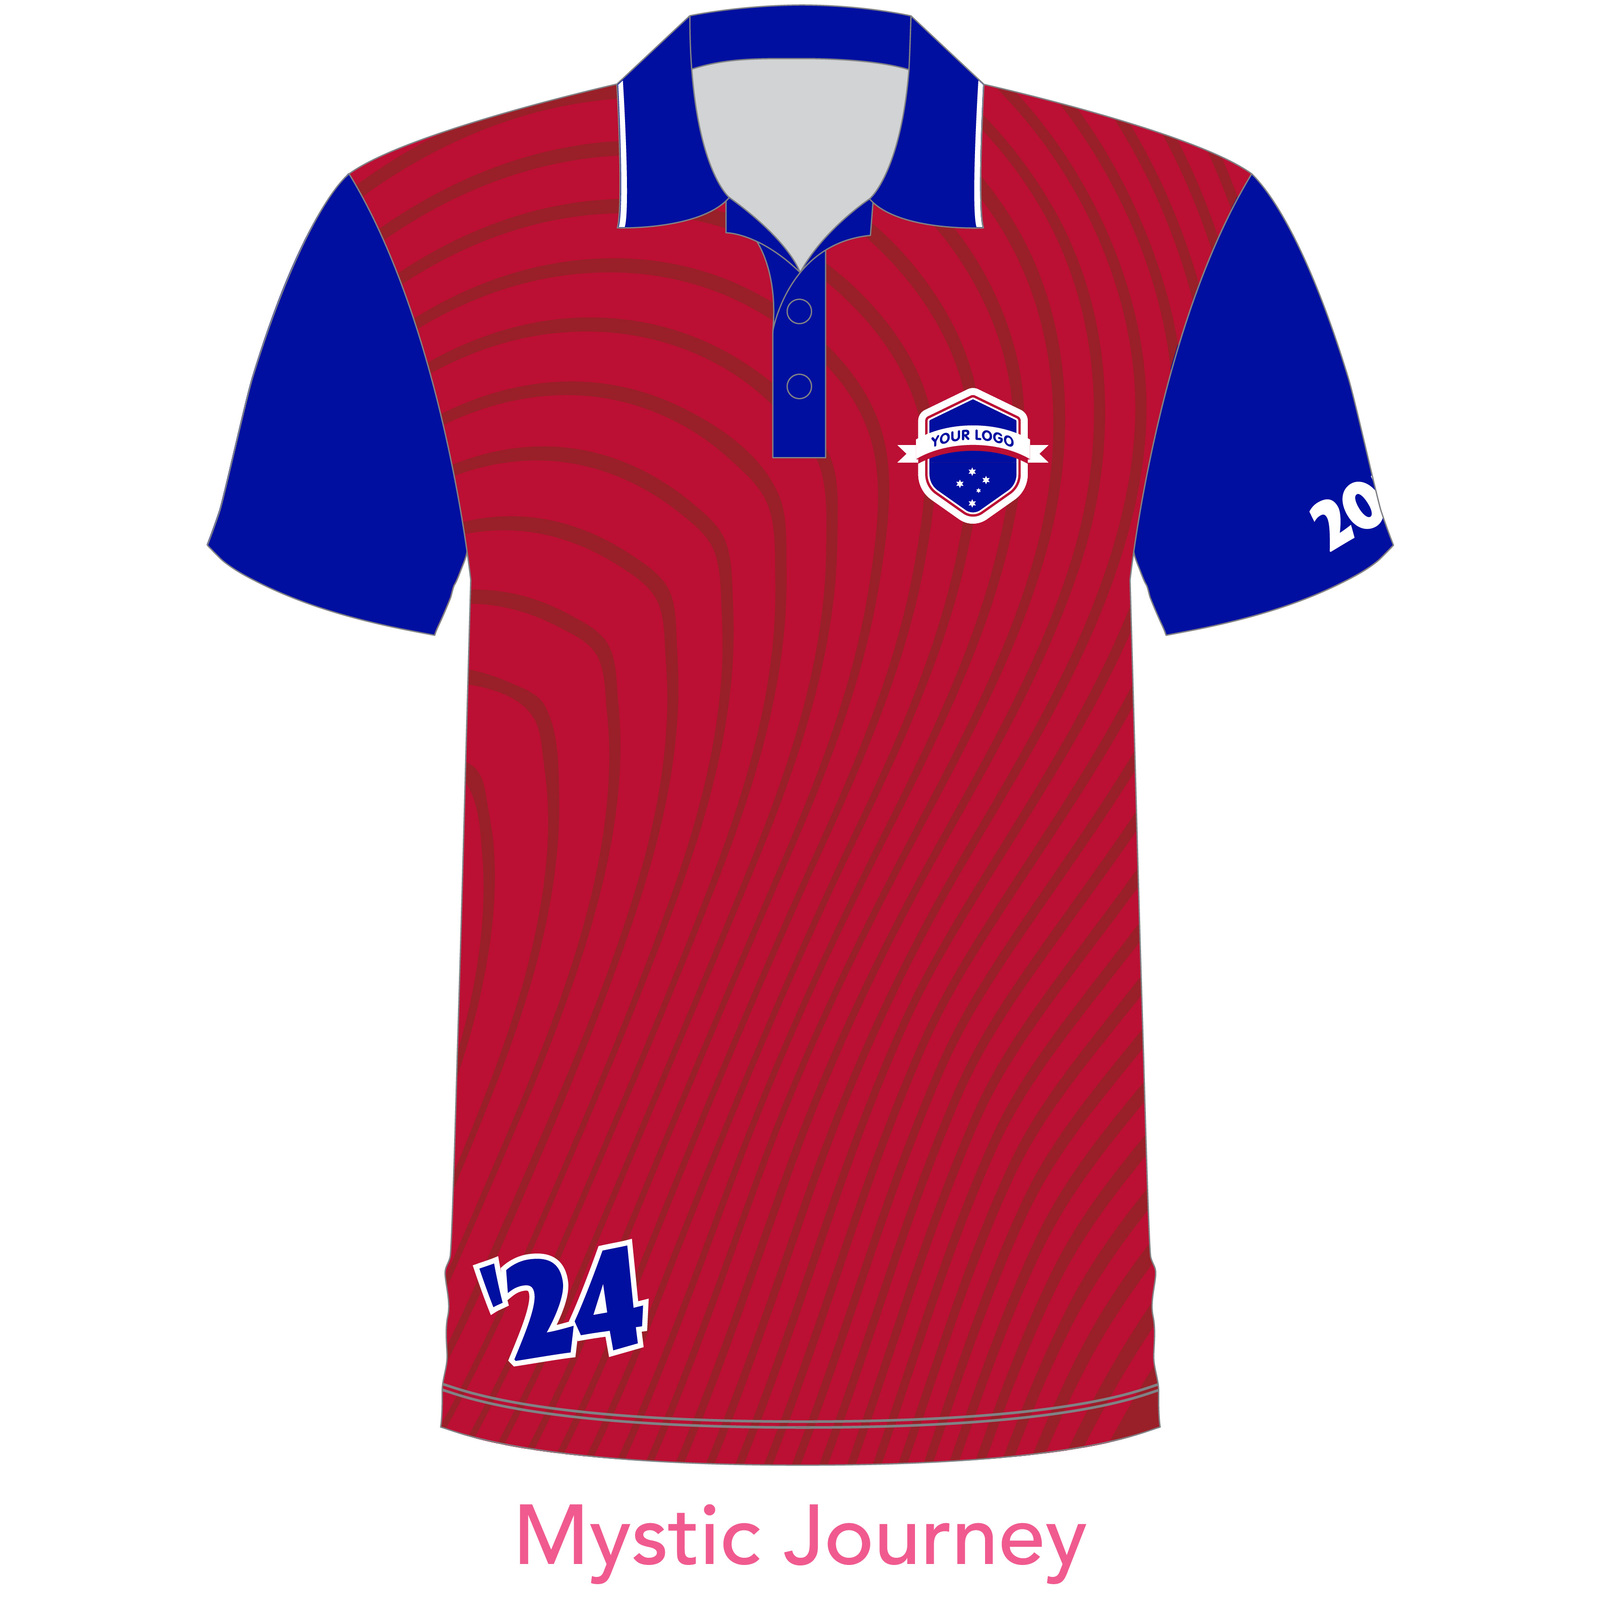 Customised Shirt - Mystic Journey